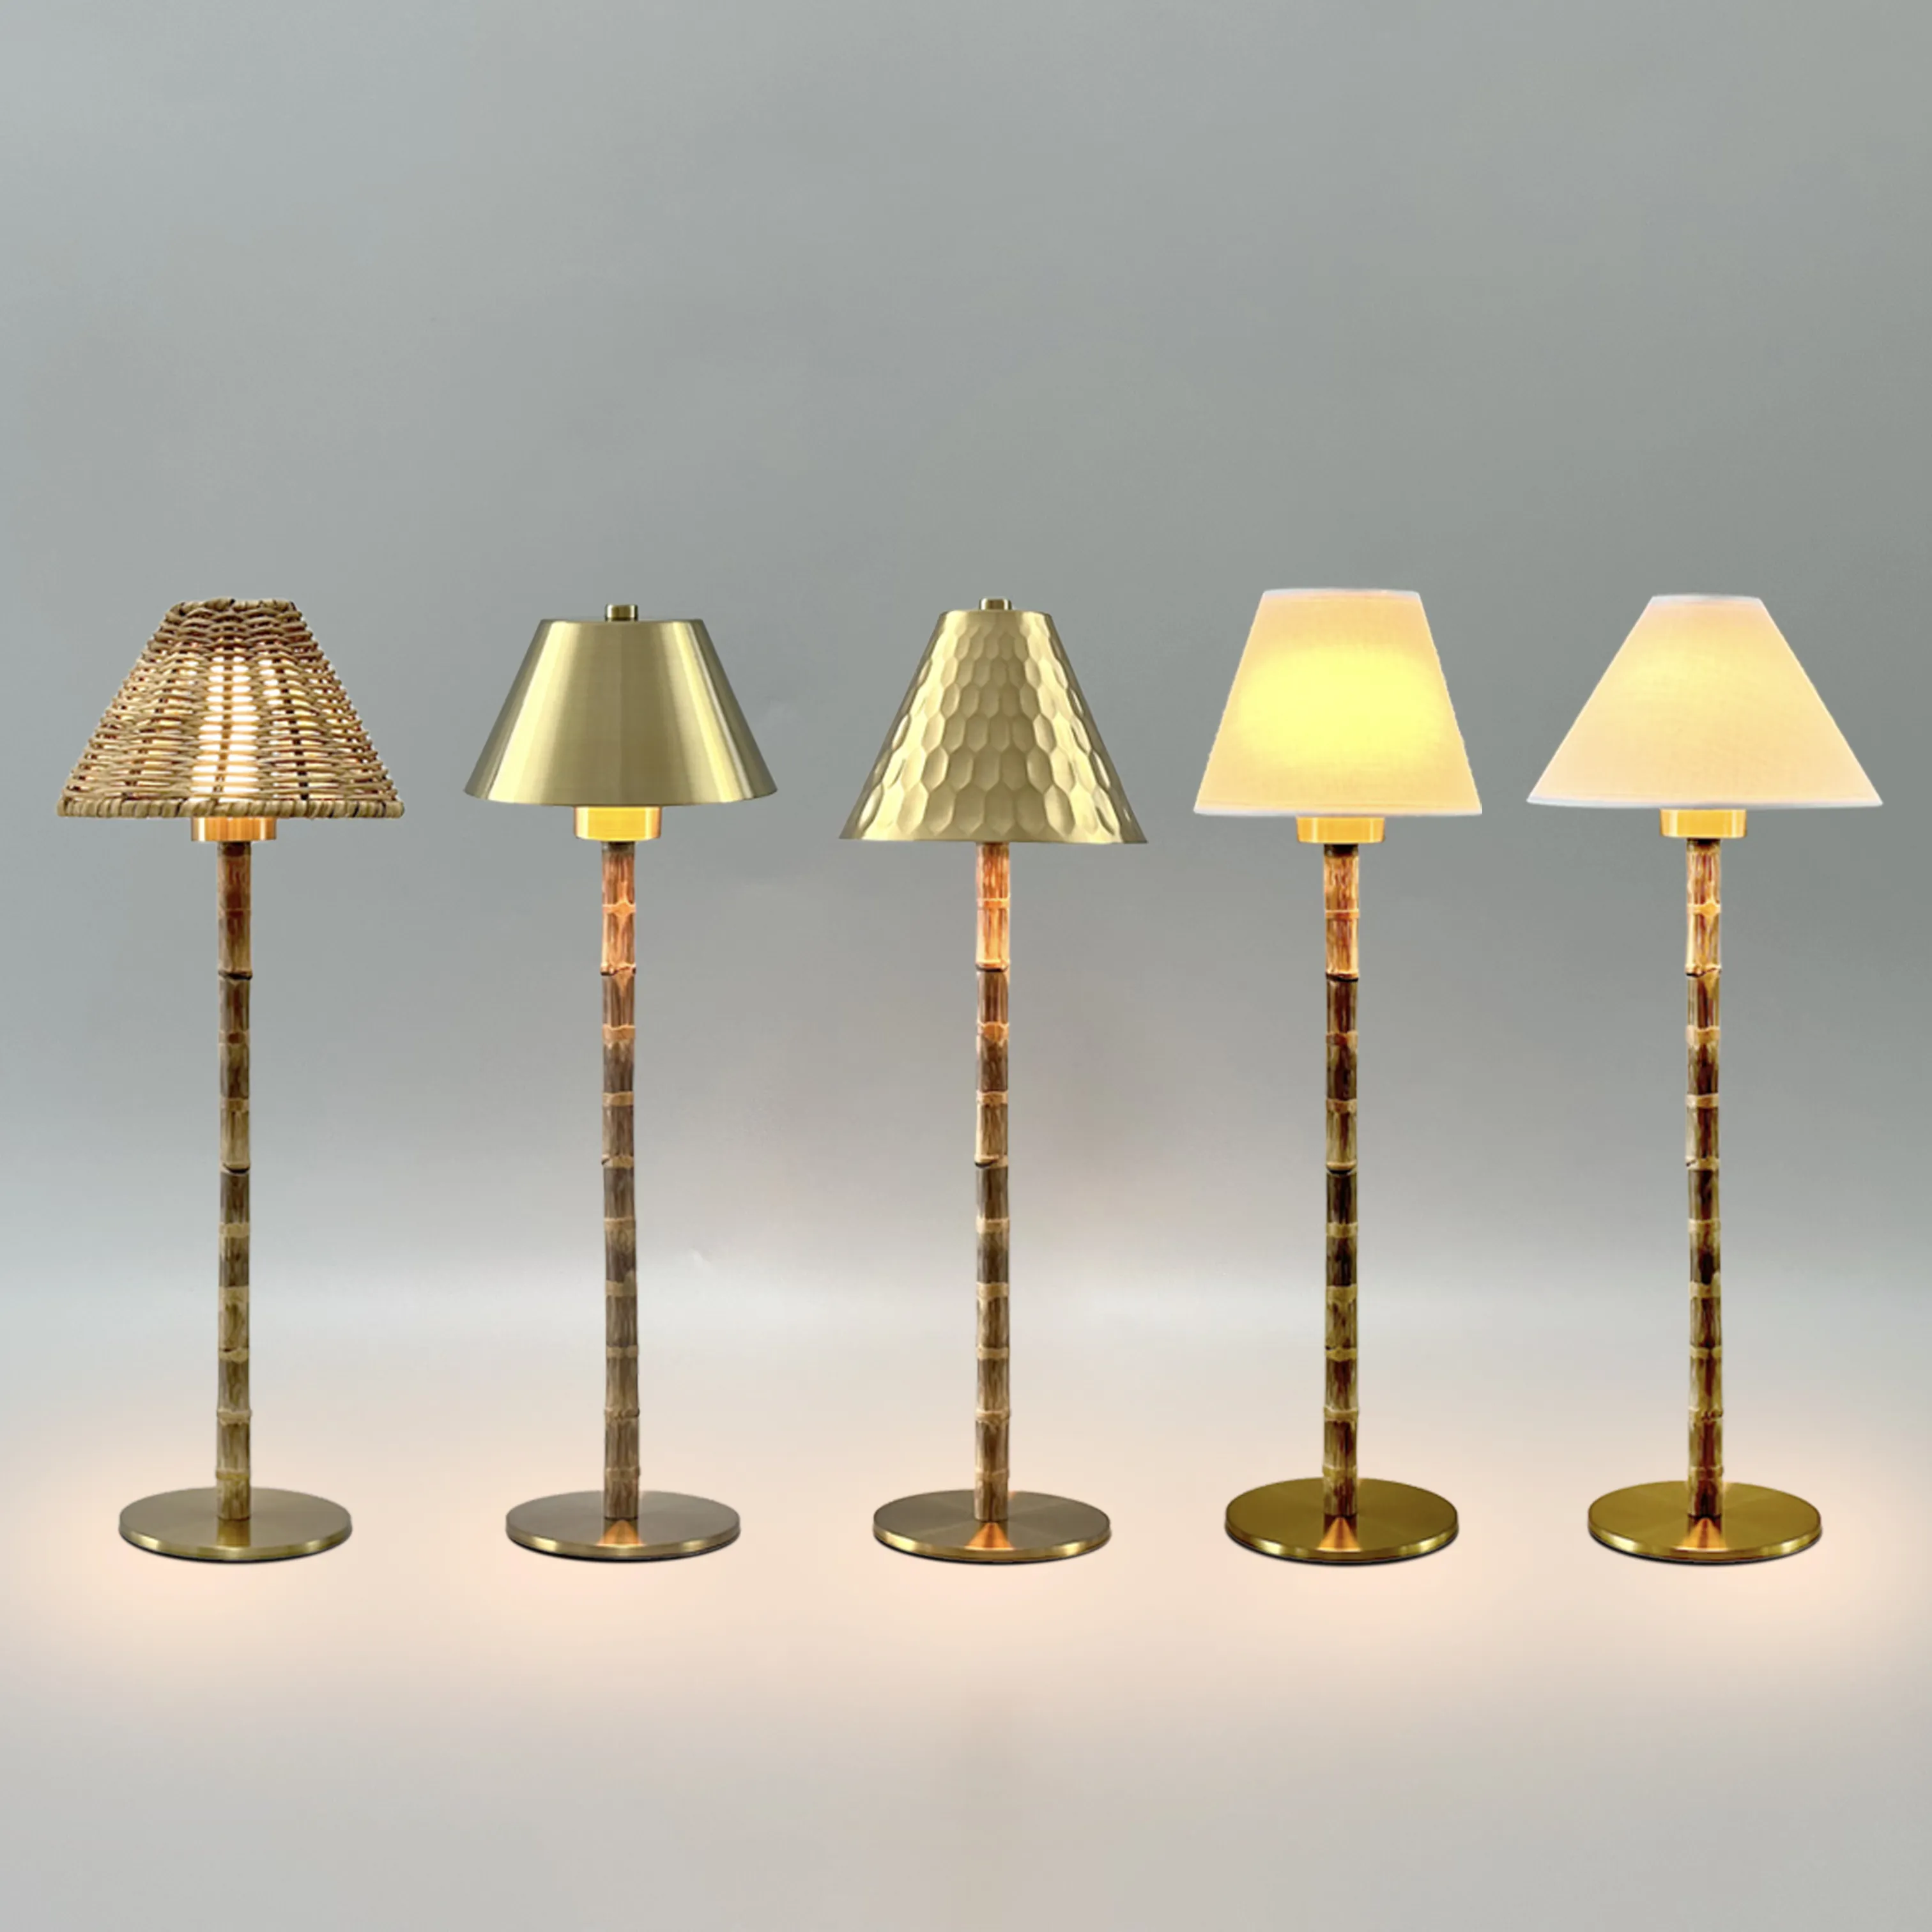 Lampu meja dasar lampu bambu, kap logam dapat diganti sentuhan nirkabel usb lampu meja isi ulang